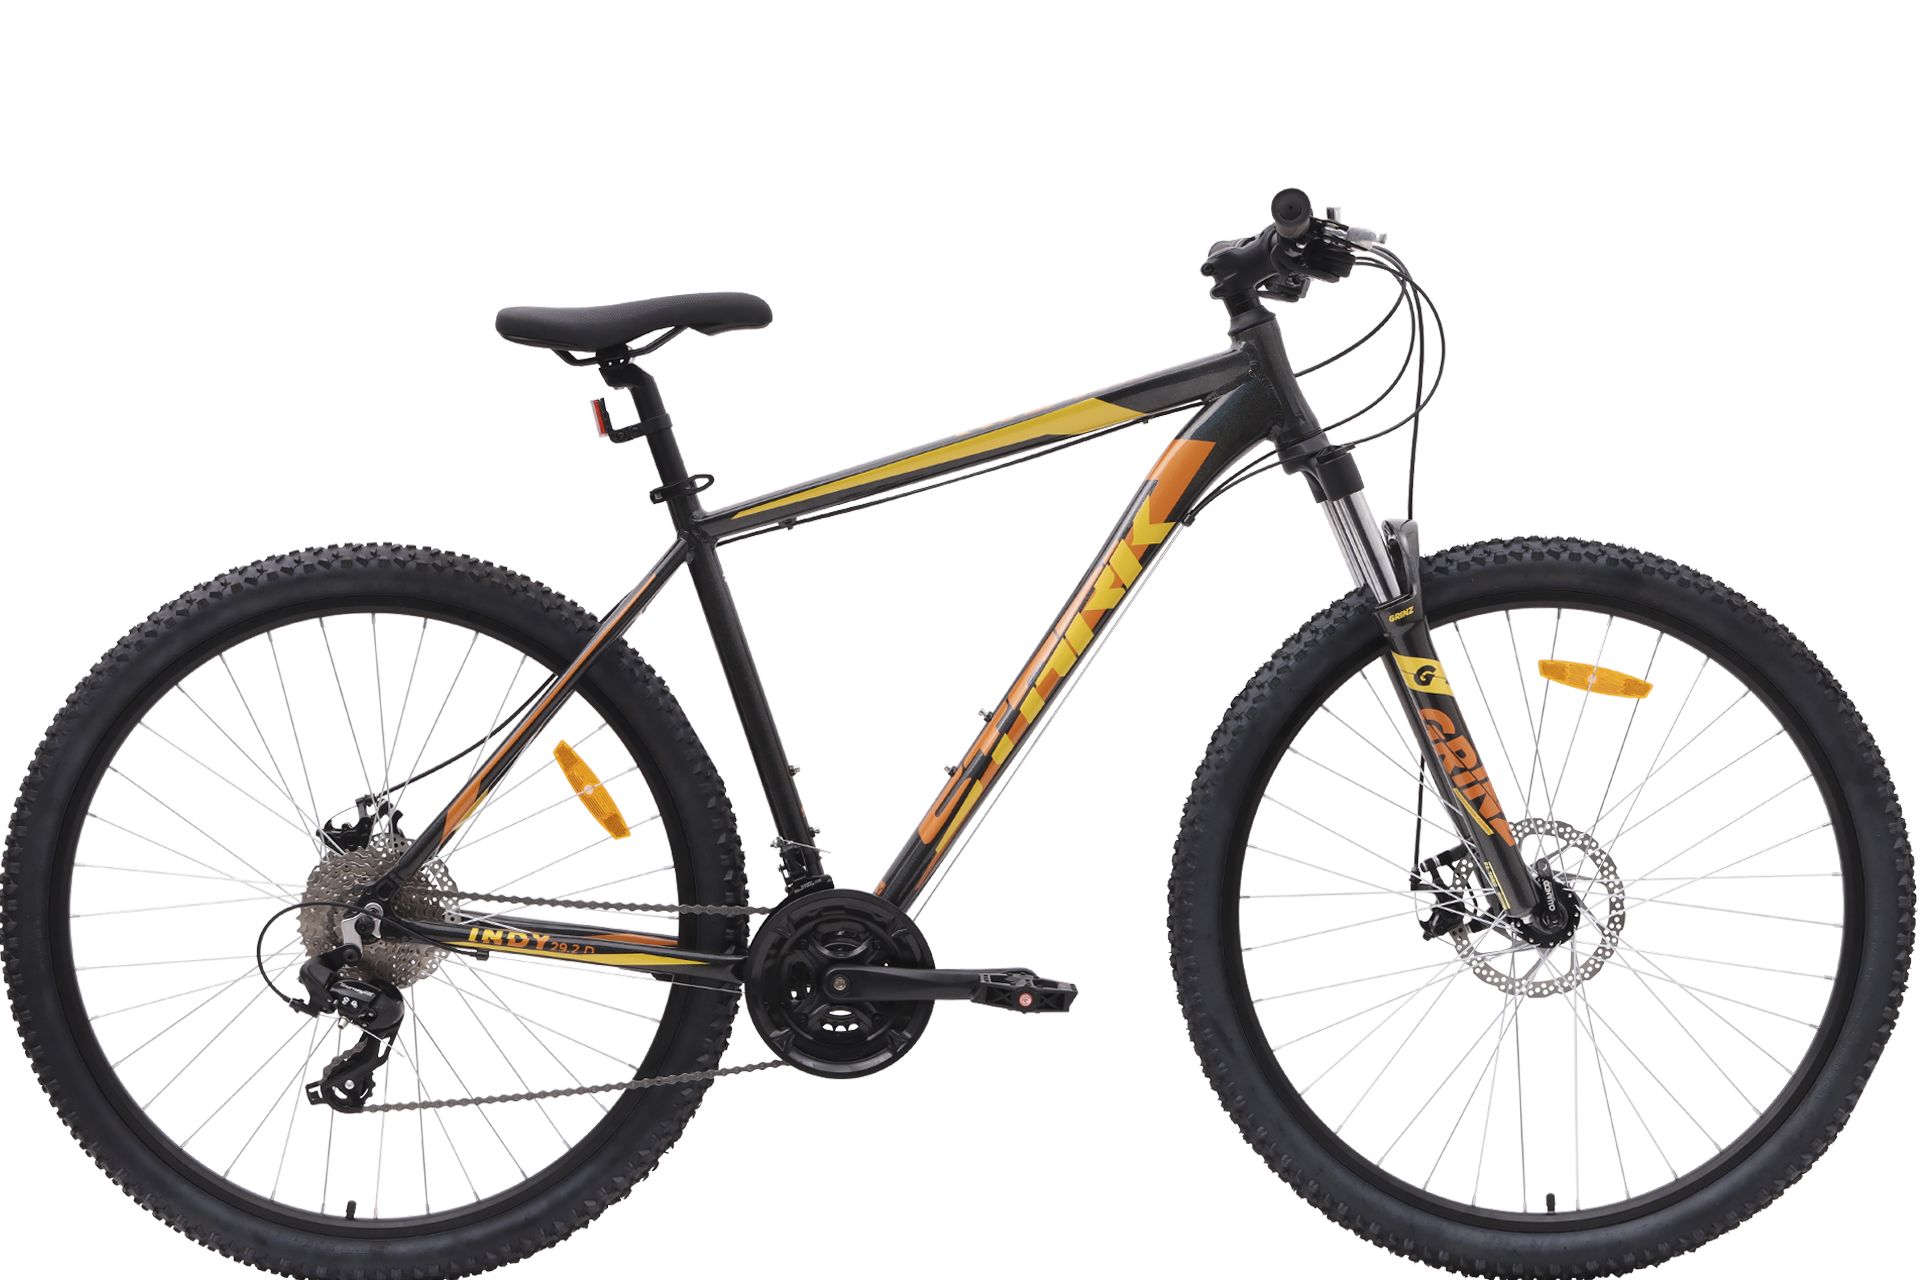 Giant Rincon Ltd 26. Велосипед giant Rincon. Горный (MTB) велосипед Marin Nail Trail 9.6 (2016). Rocky Mountain Vertex 930 2014.